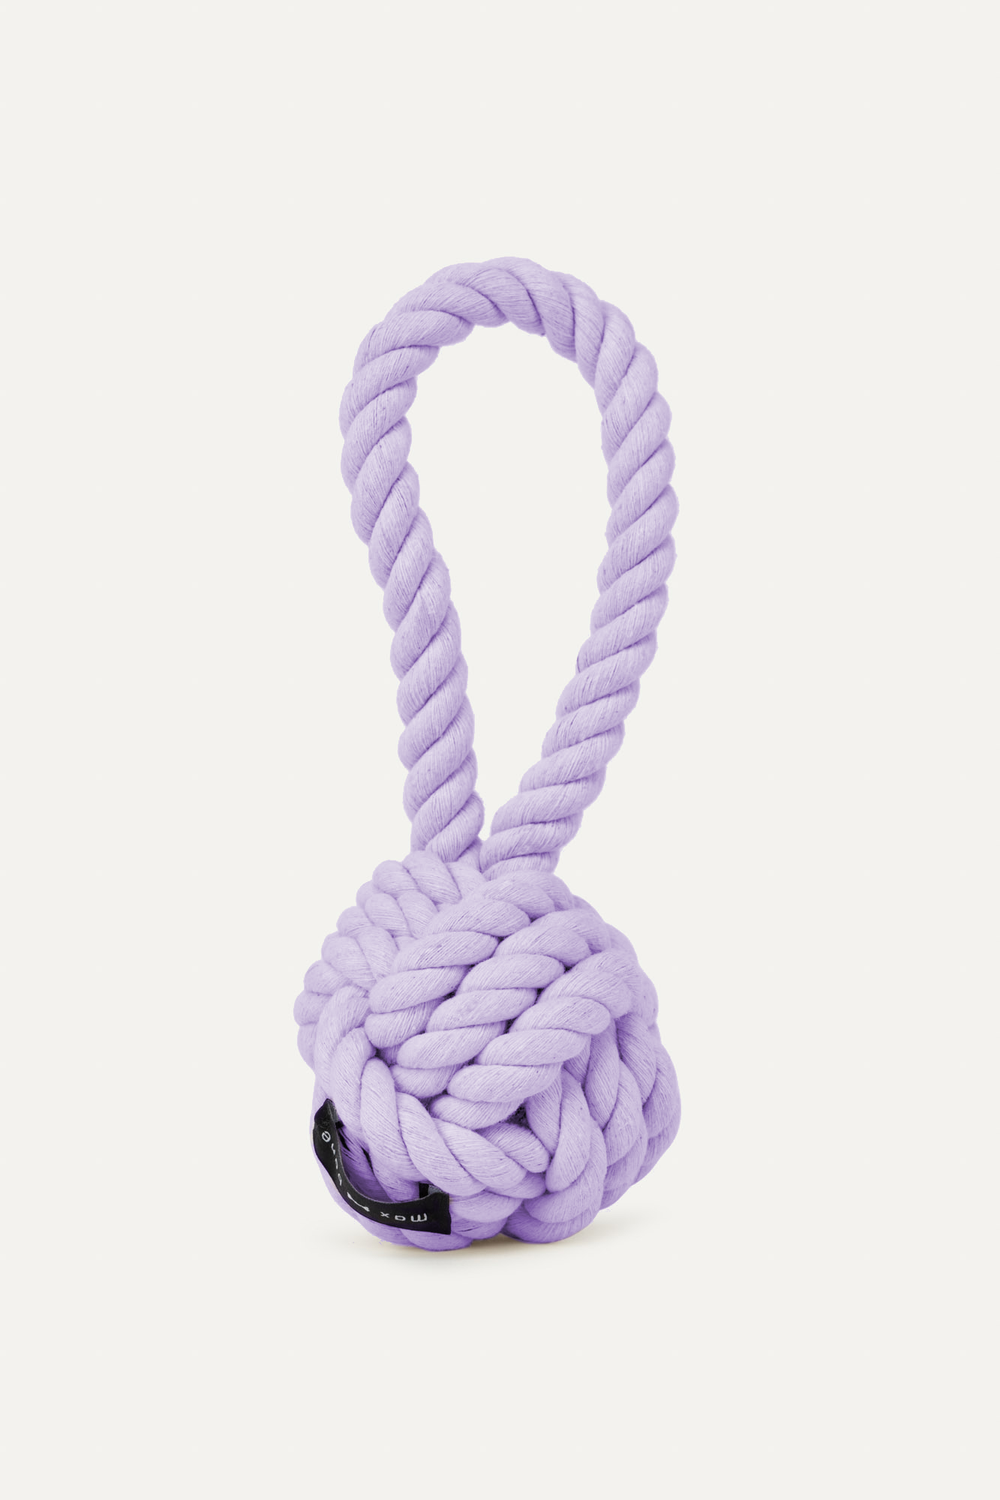 Rope Dog Toy: Lavander